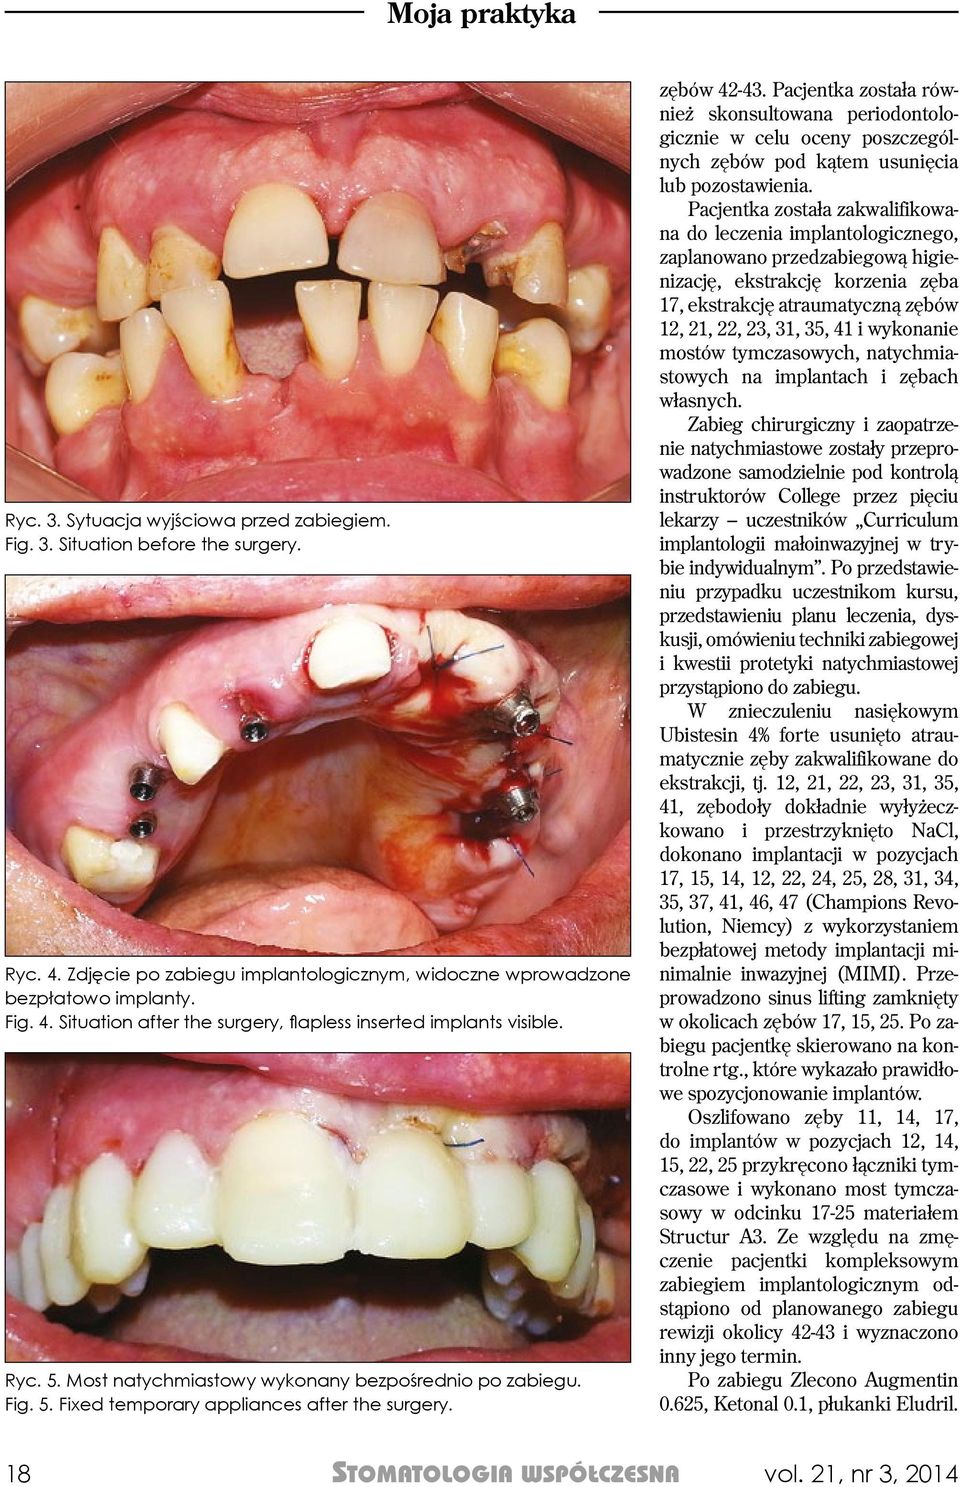 Pacjentka została również skonsultowana periodontologicznie w celu oceny poszczególnych zębów pod kątem usunięcia lub pozostawienia.